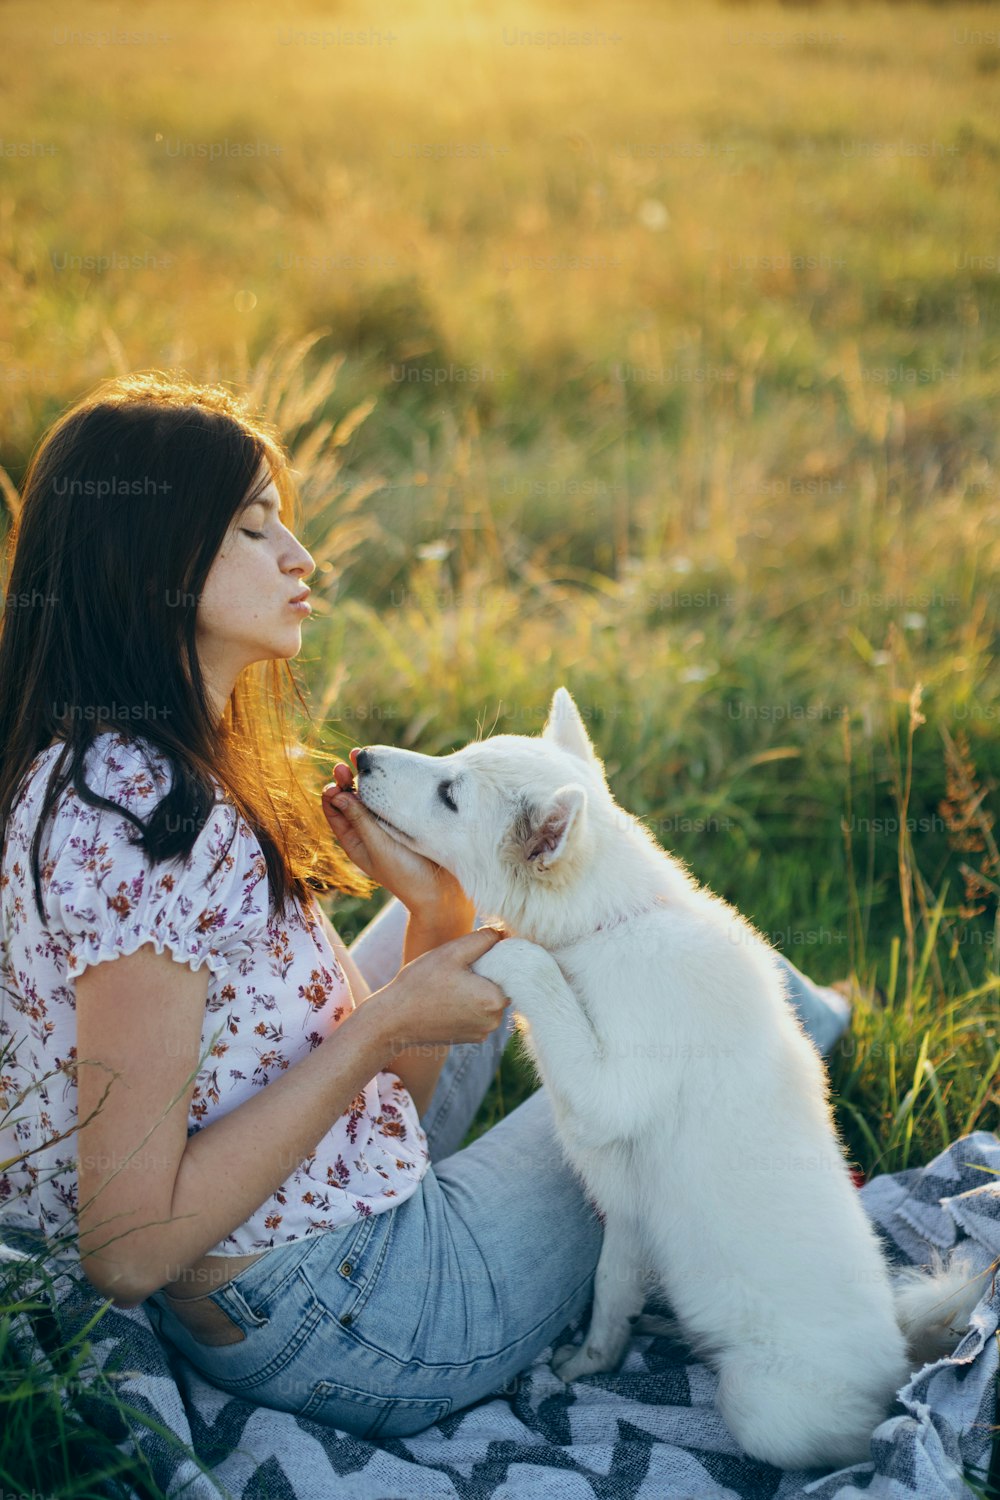 행복한 여자는 일몰 빛 아래 여름 초원에서 행동하기 위해 귀여운 흰색 강아지를 훈련시킵니다. 세련된 캐주얼 젊은 여성은 사랑스러운 스위스 양치기 푹신한 강아지와 함께 휴식을 취합니다. 애완 동물과 함께 휴가